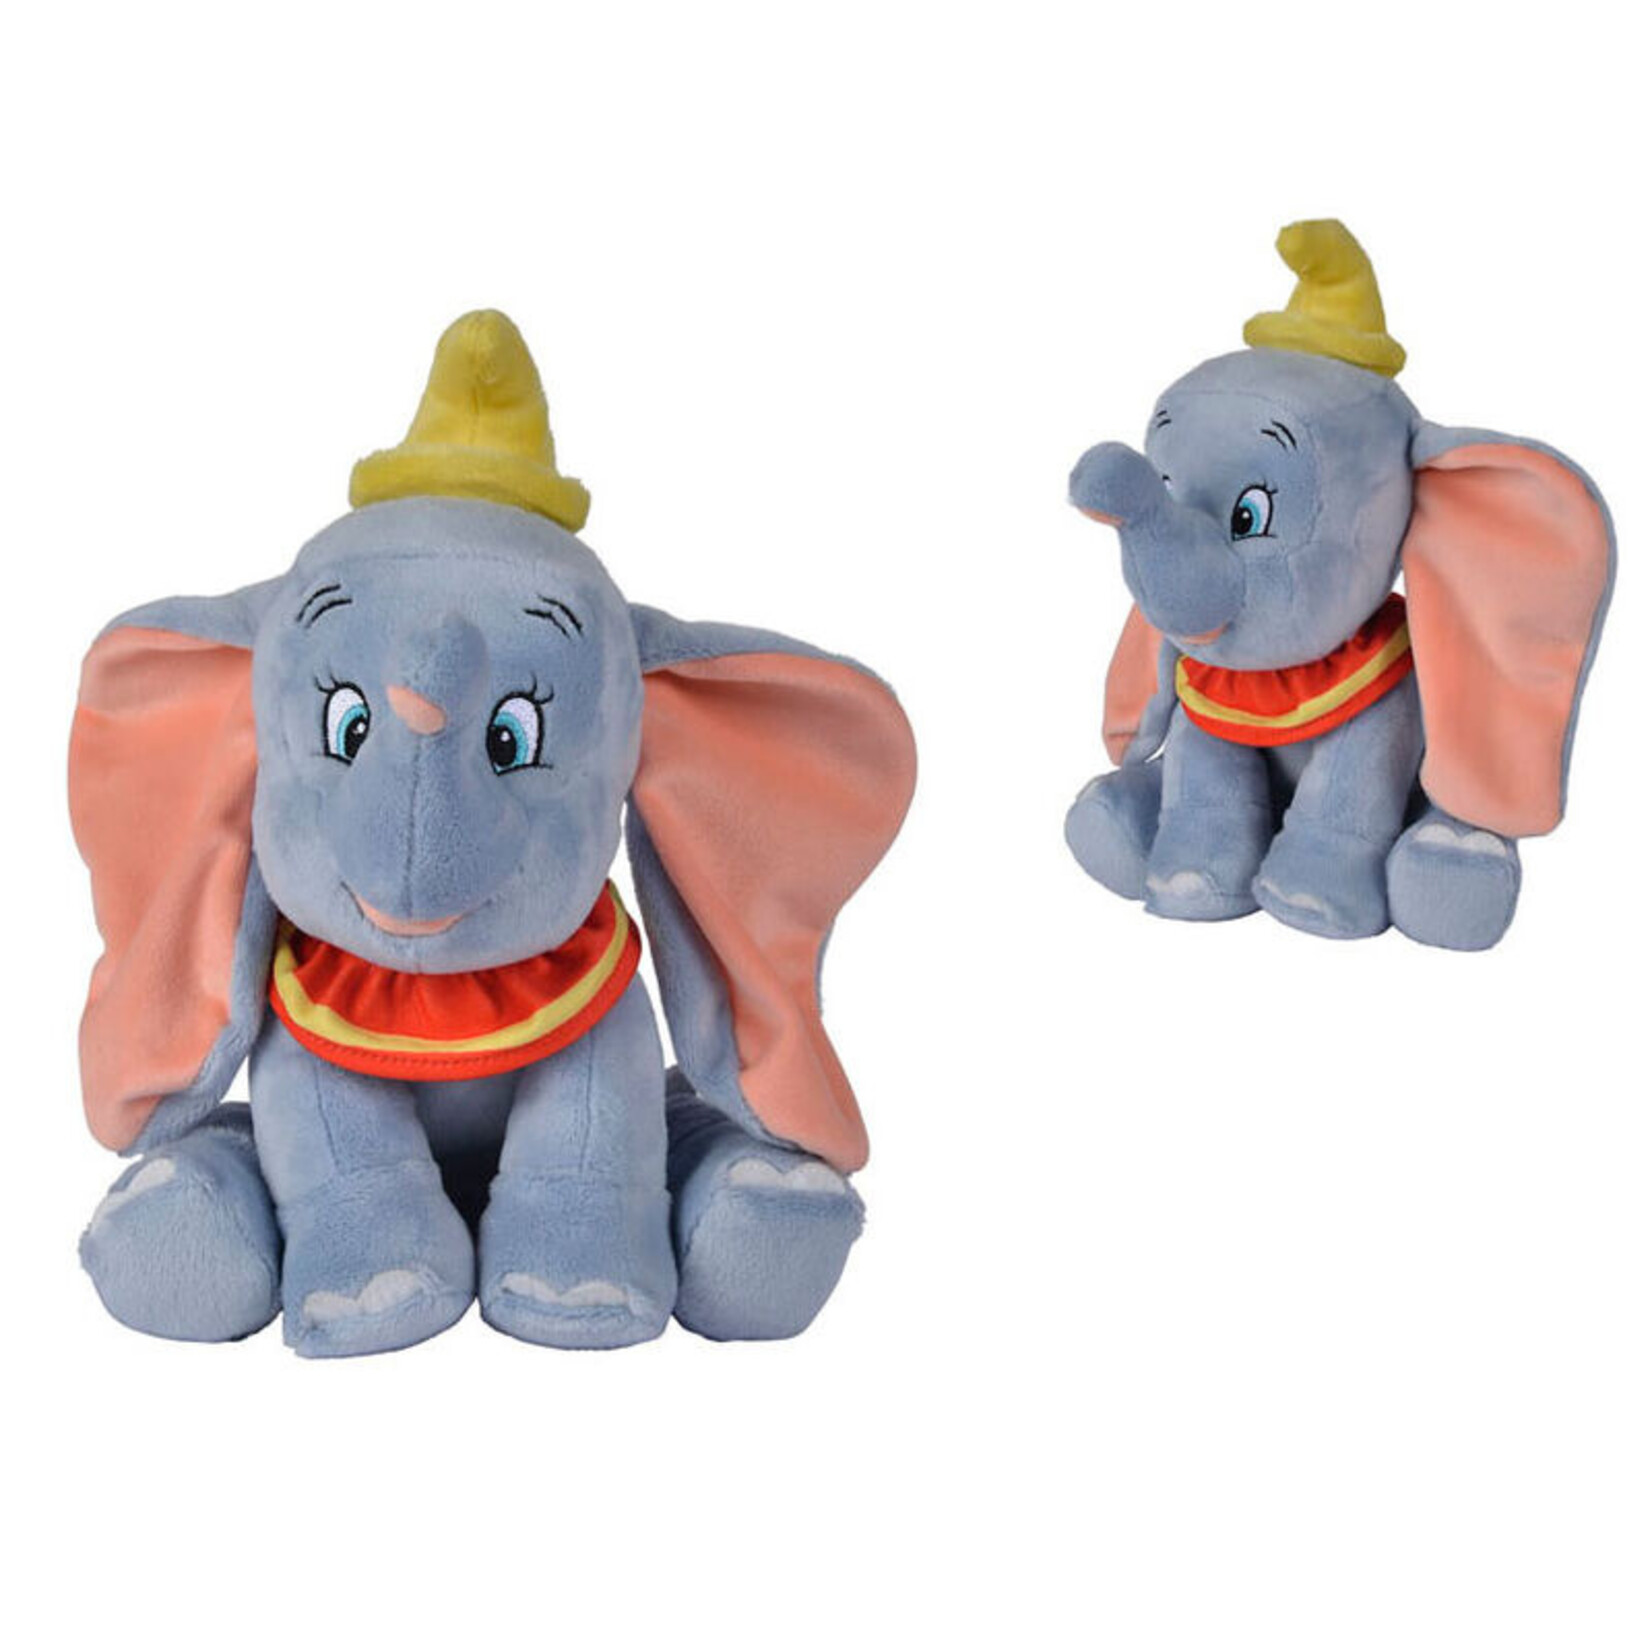 Simba Toys Simba Toys Disney Classics Plush Dumbo 25 cm